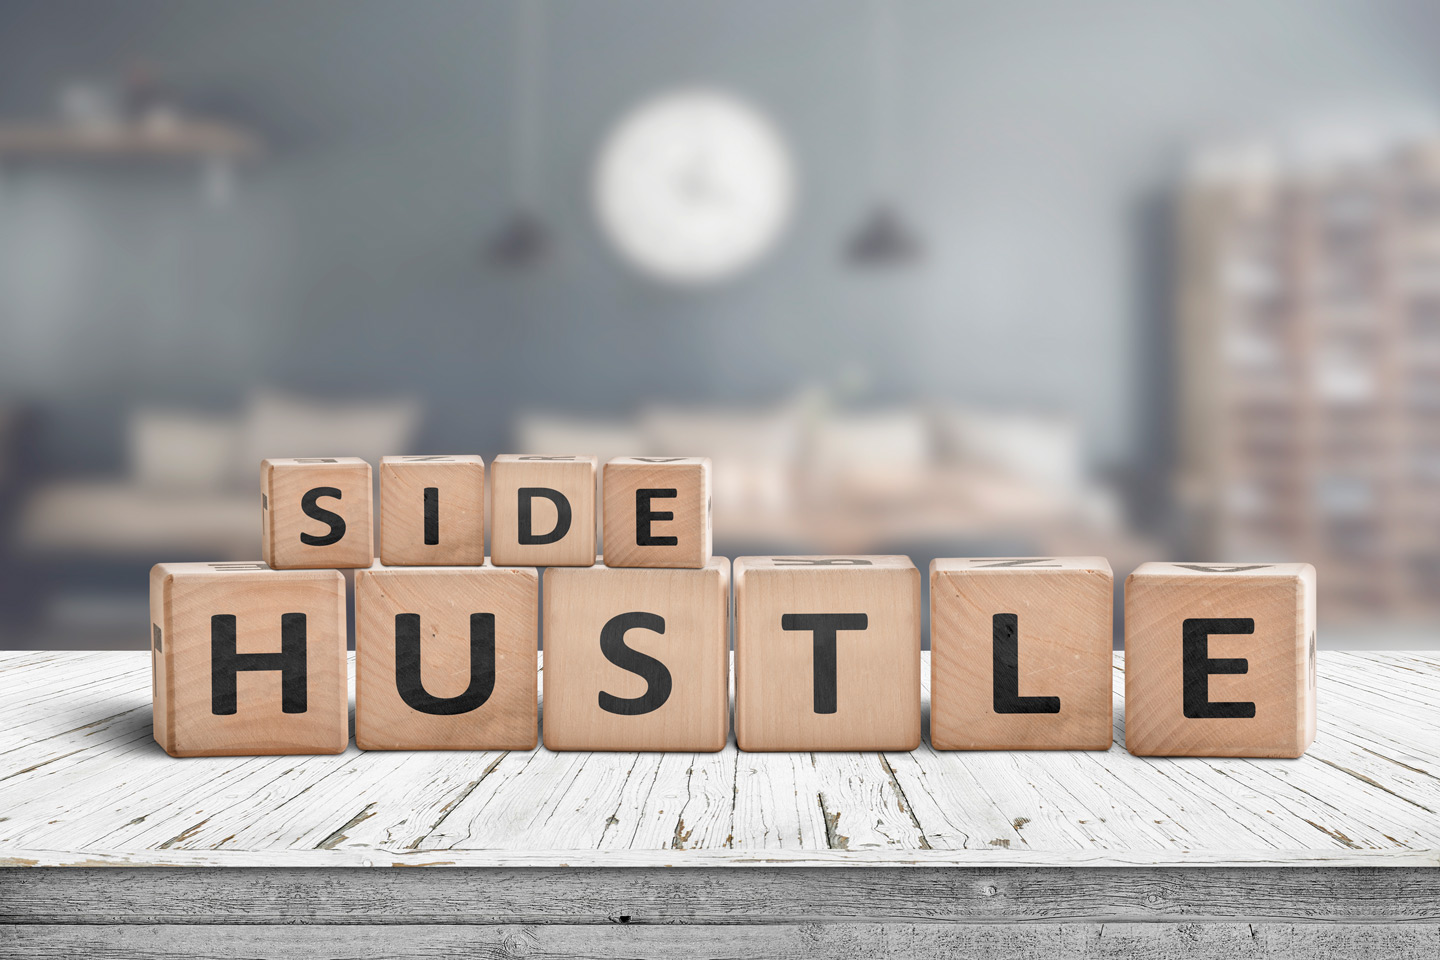 "Side Hustle" spelled in wooden blocks.